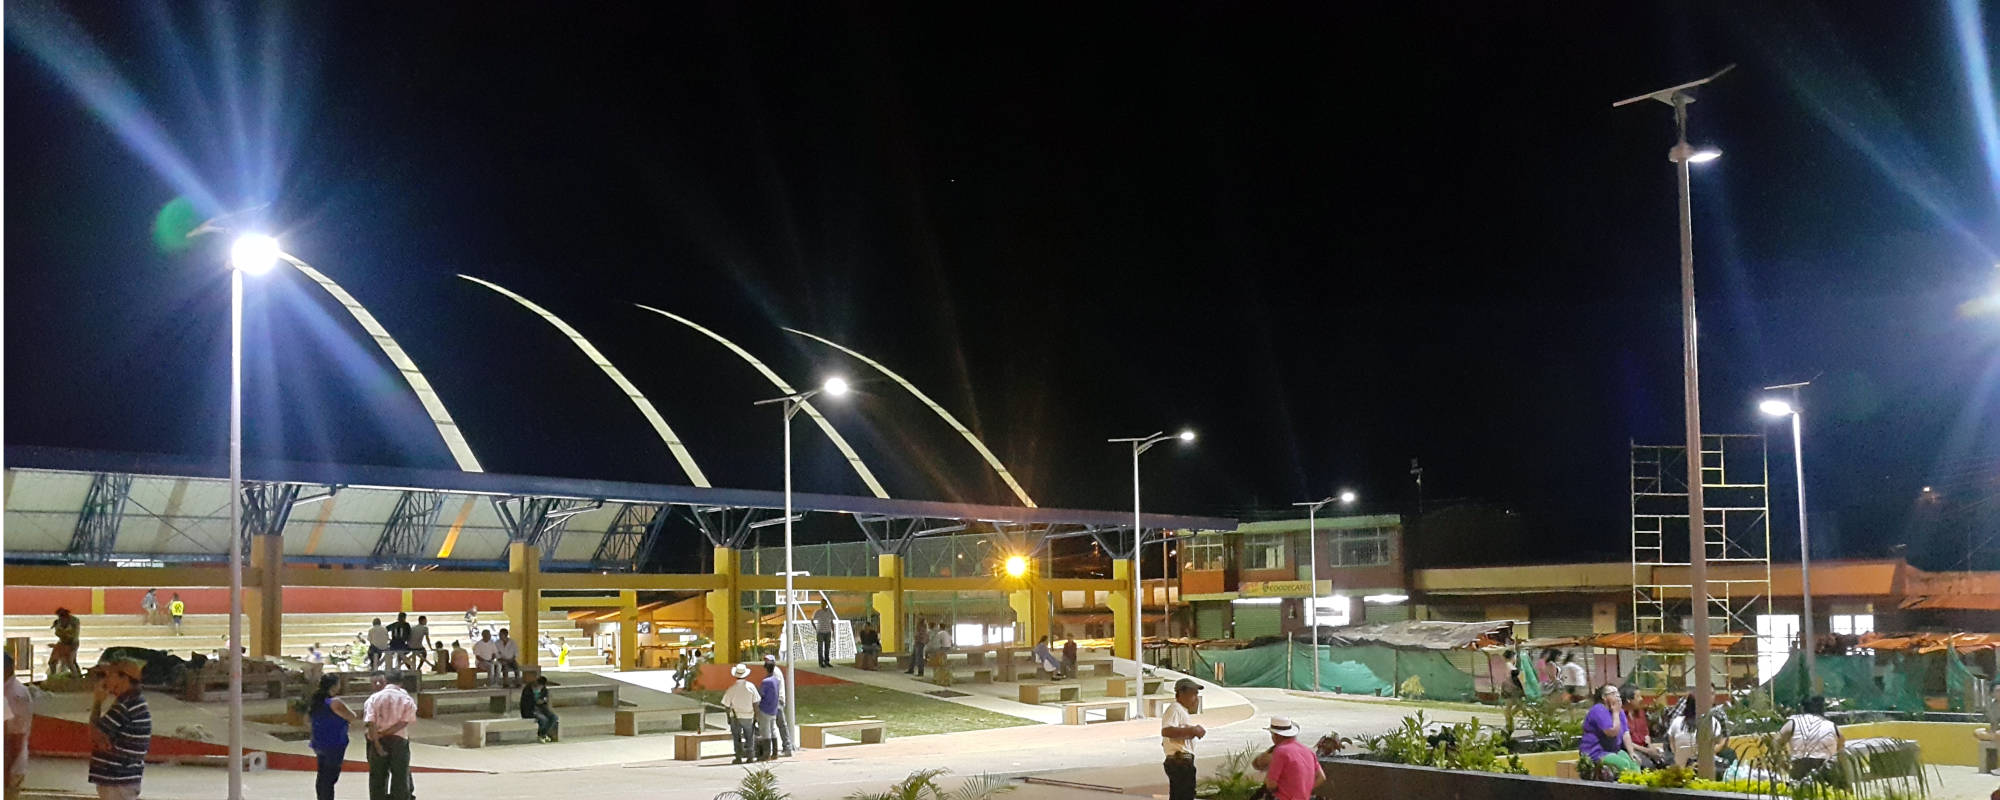 Parque Principal Yacopí – Iluminación Energia Solar 2016 –